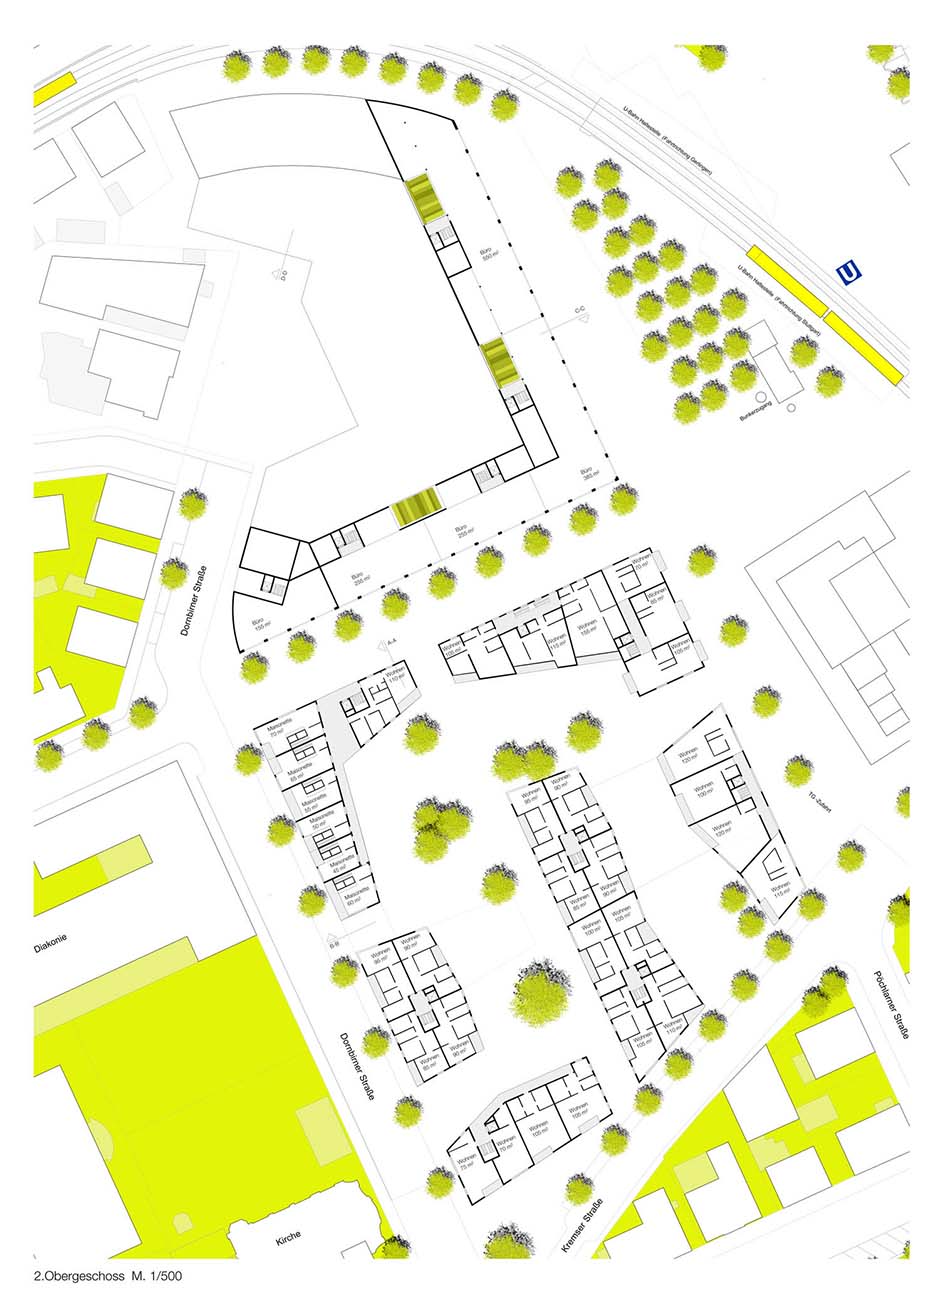 Bild zum Projekt Wettbewerb Schoch-Areal und Umgebung, Stuttgart